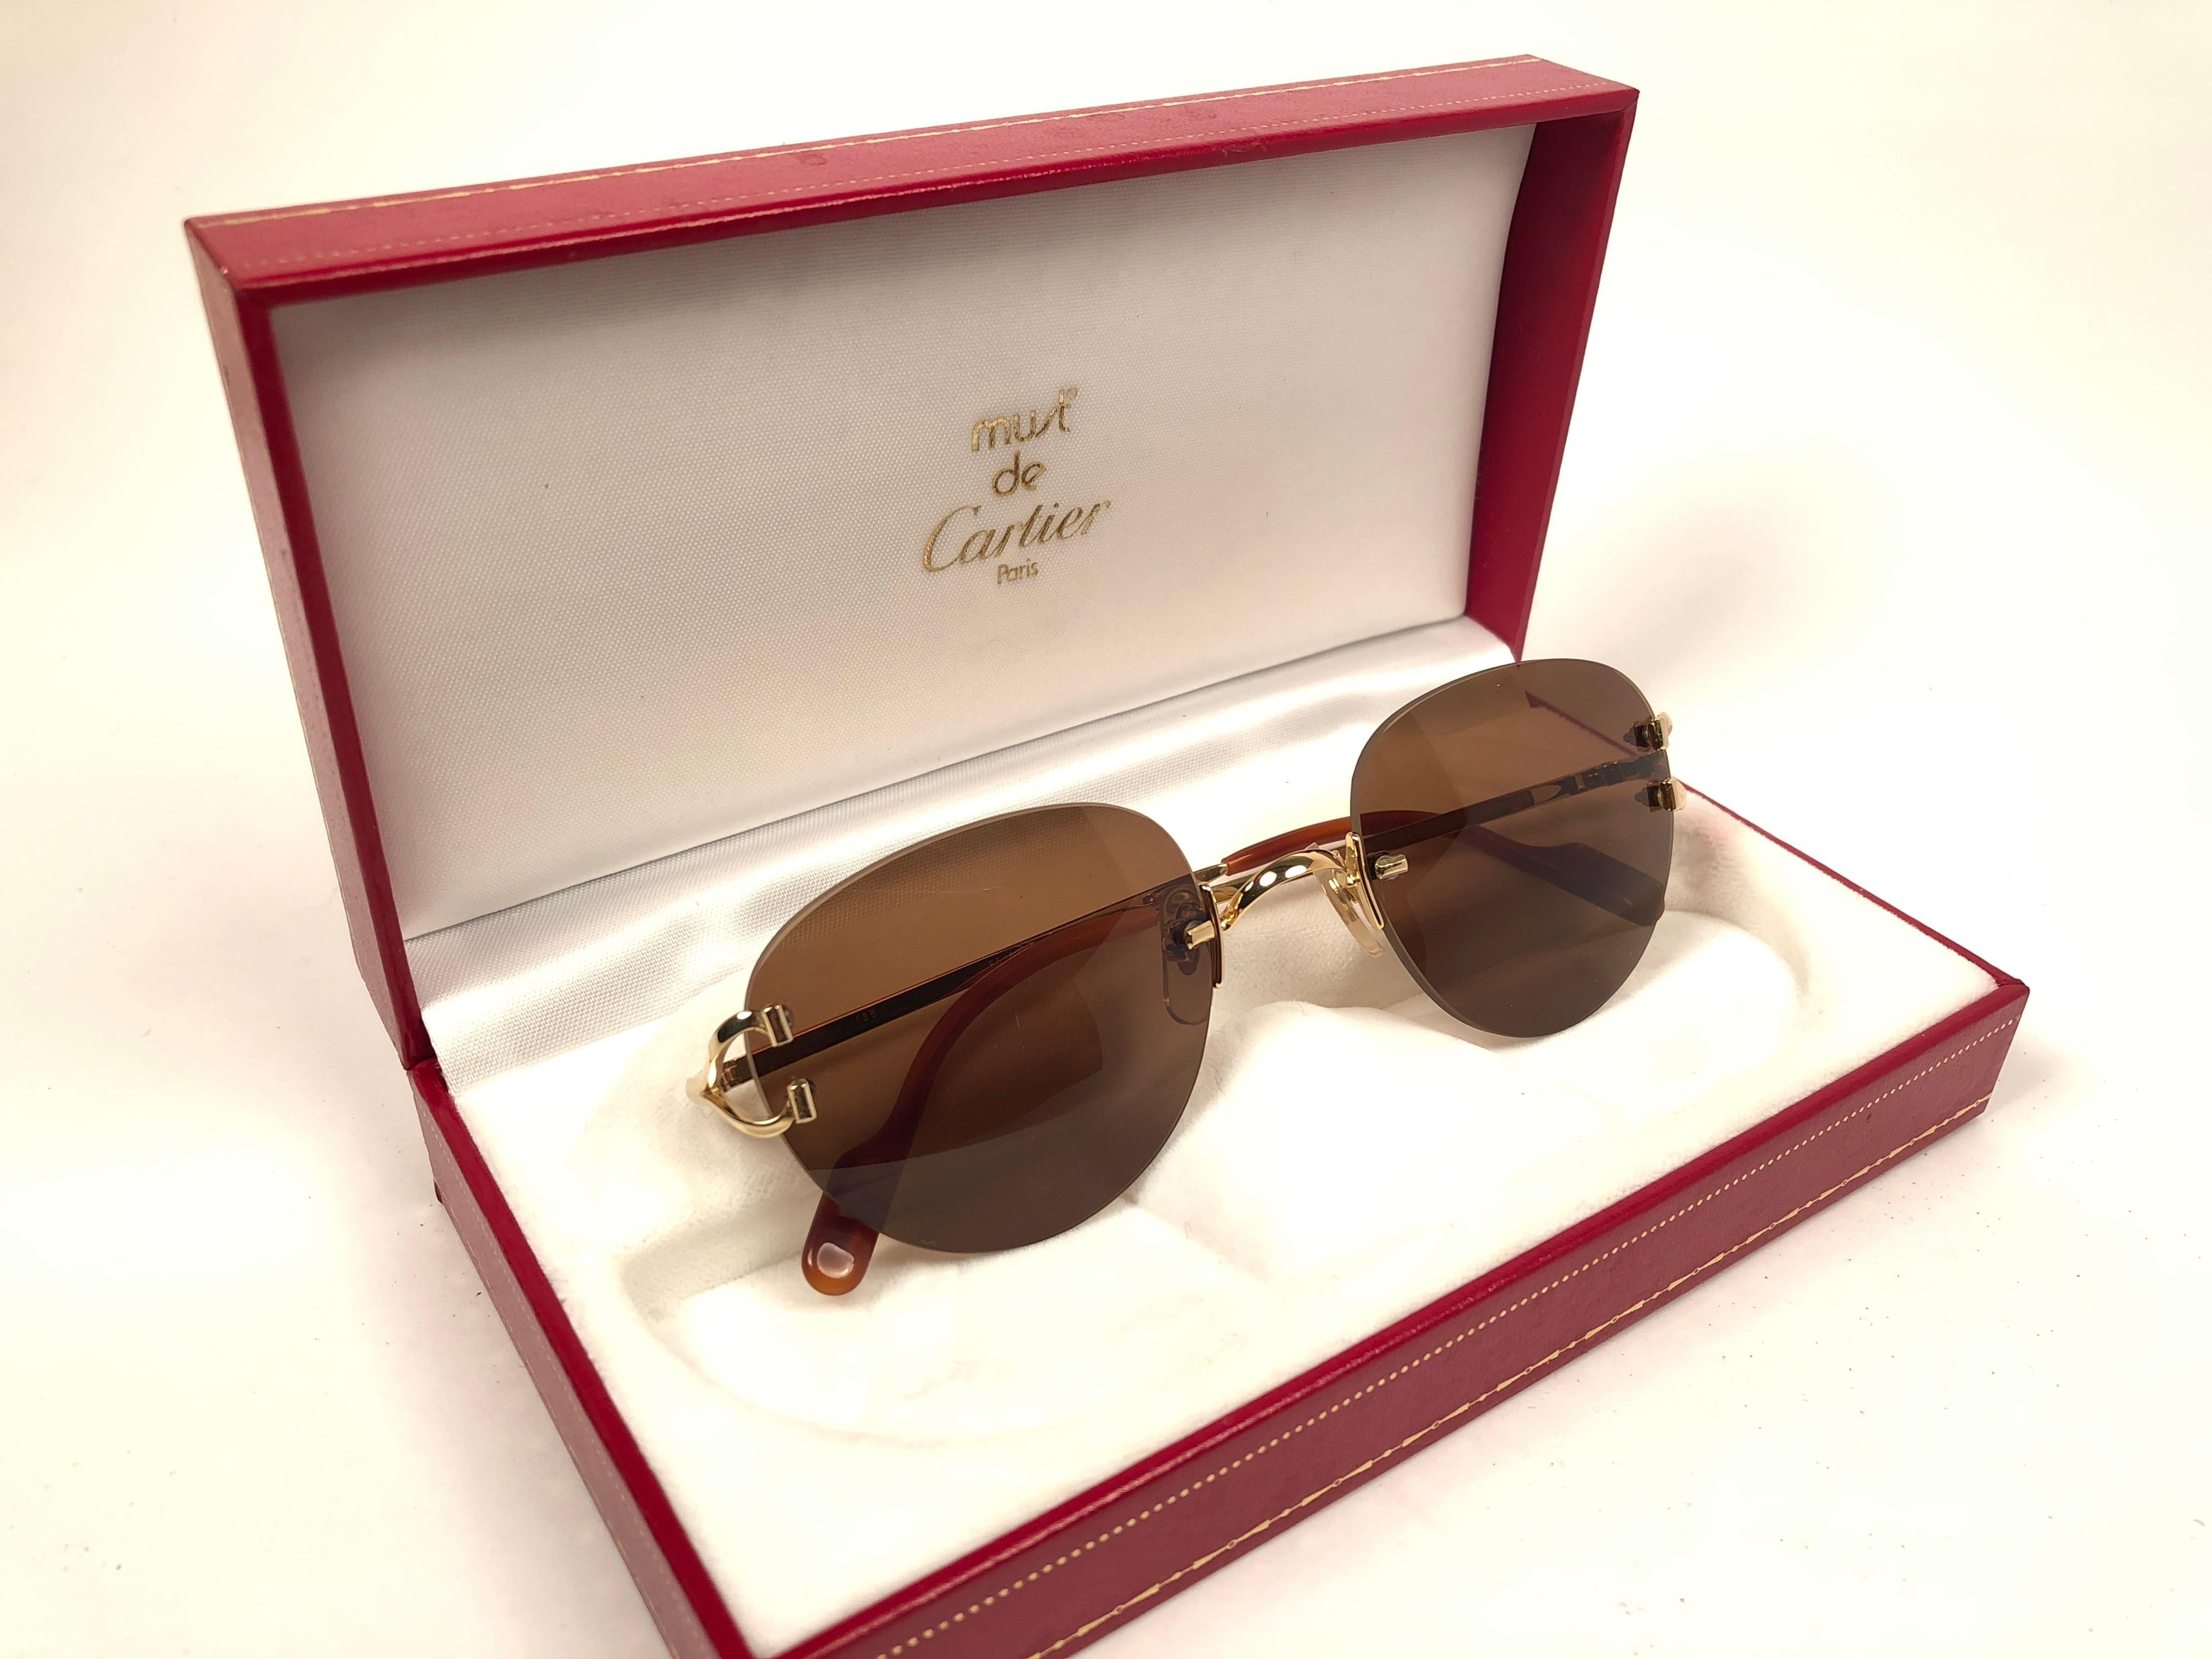 New Cartier Salisbury einzigartige randlose Sonnenbrille mit massiven braunen (UV-Schutz) Gläsern. Rahmen mit goldfarbener Vorder- und Seitenfläche. Alle Markenzeichen. Cartier-Goldzeichen auf den Ohrmuscheln. Sie sind wie ein Paar Juwelen auf der